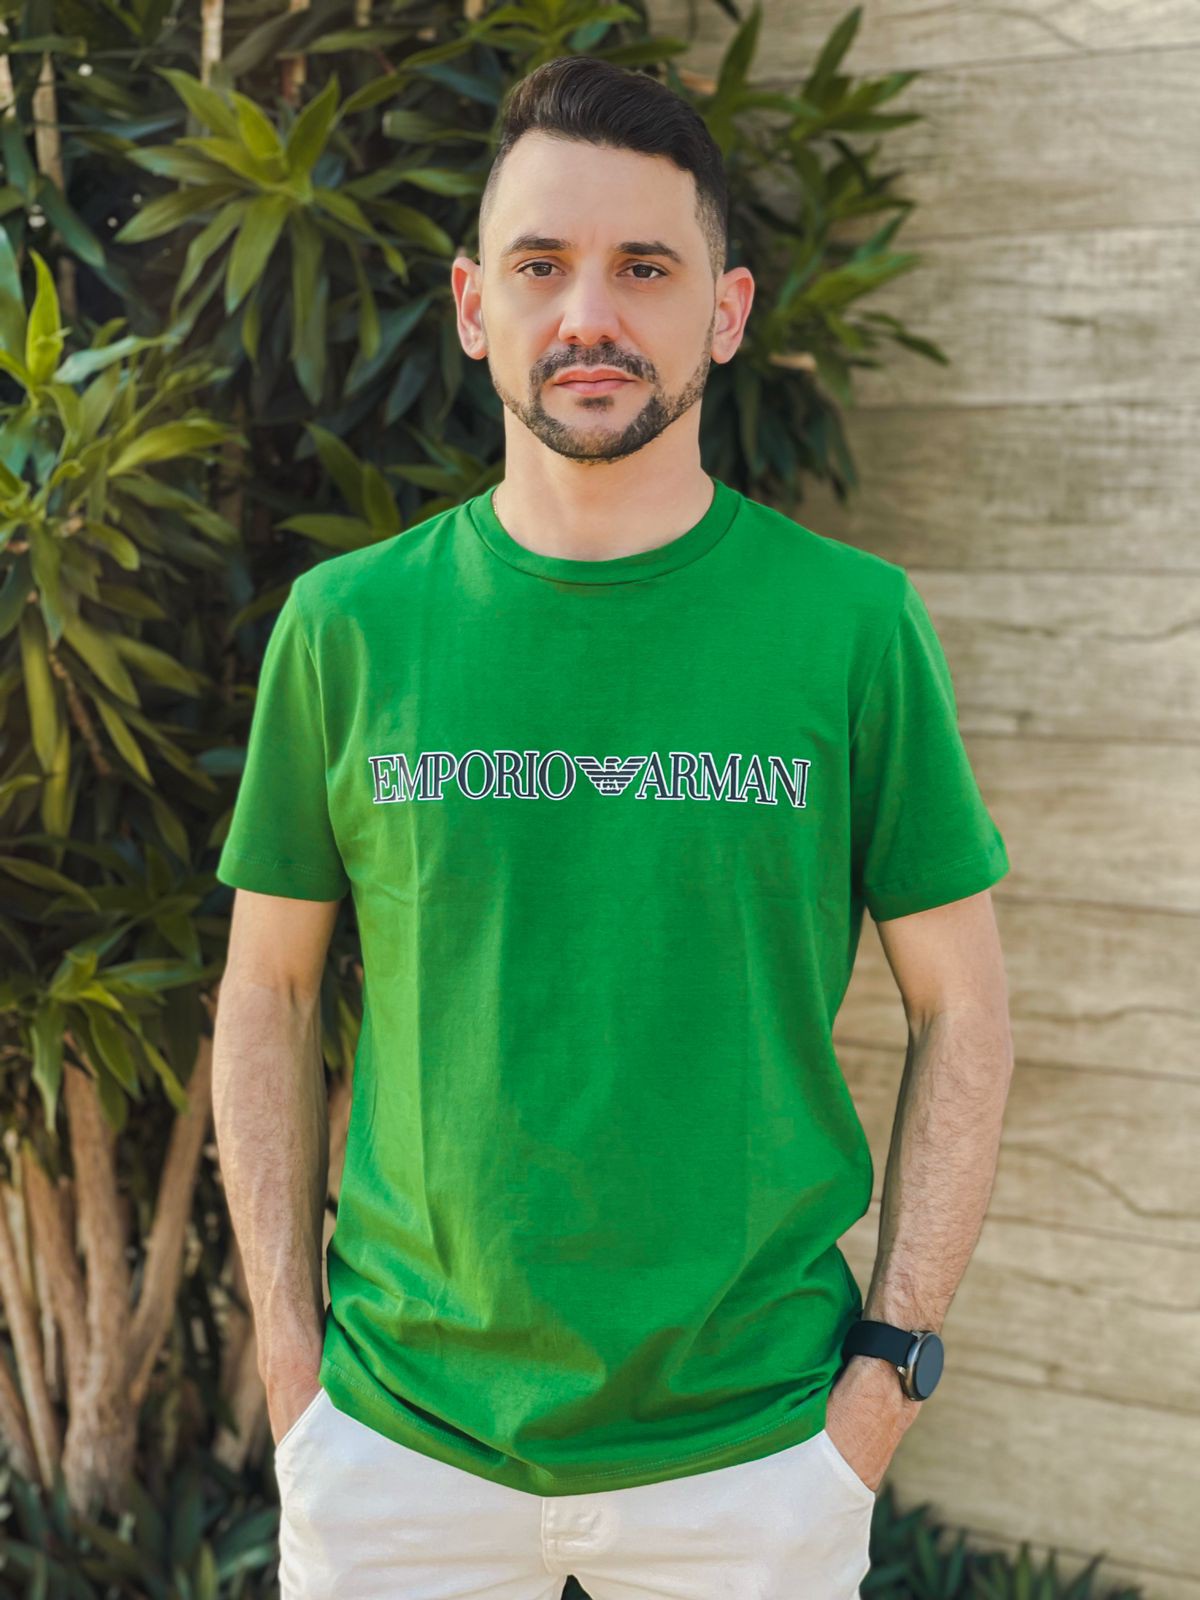 Camiseta Empório Armani Masculina Verde Seleção - HERRERA BRAND